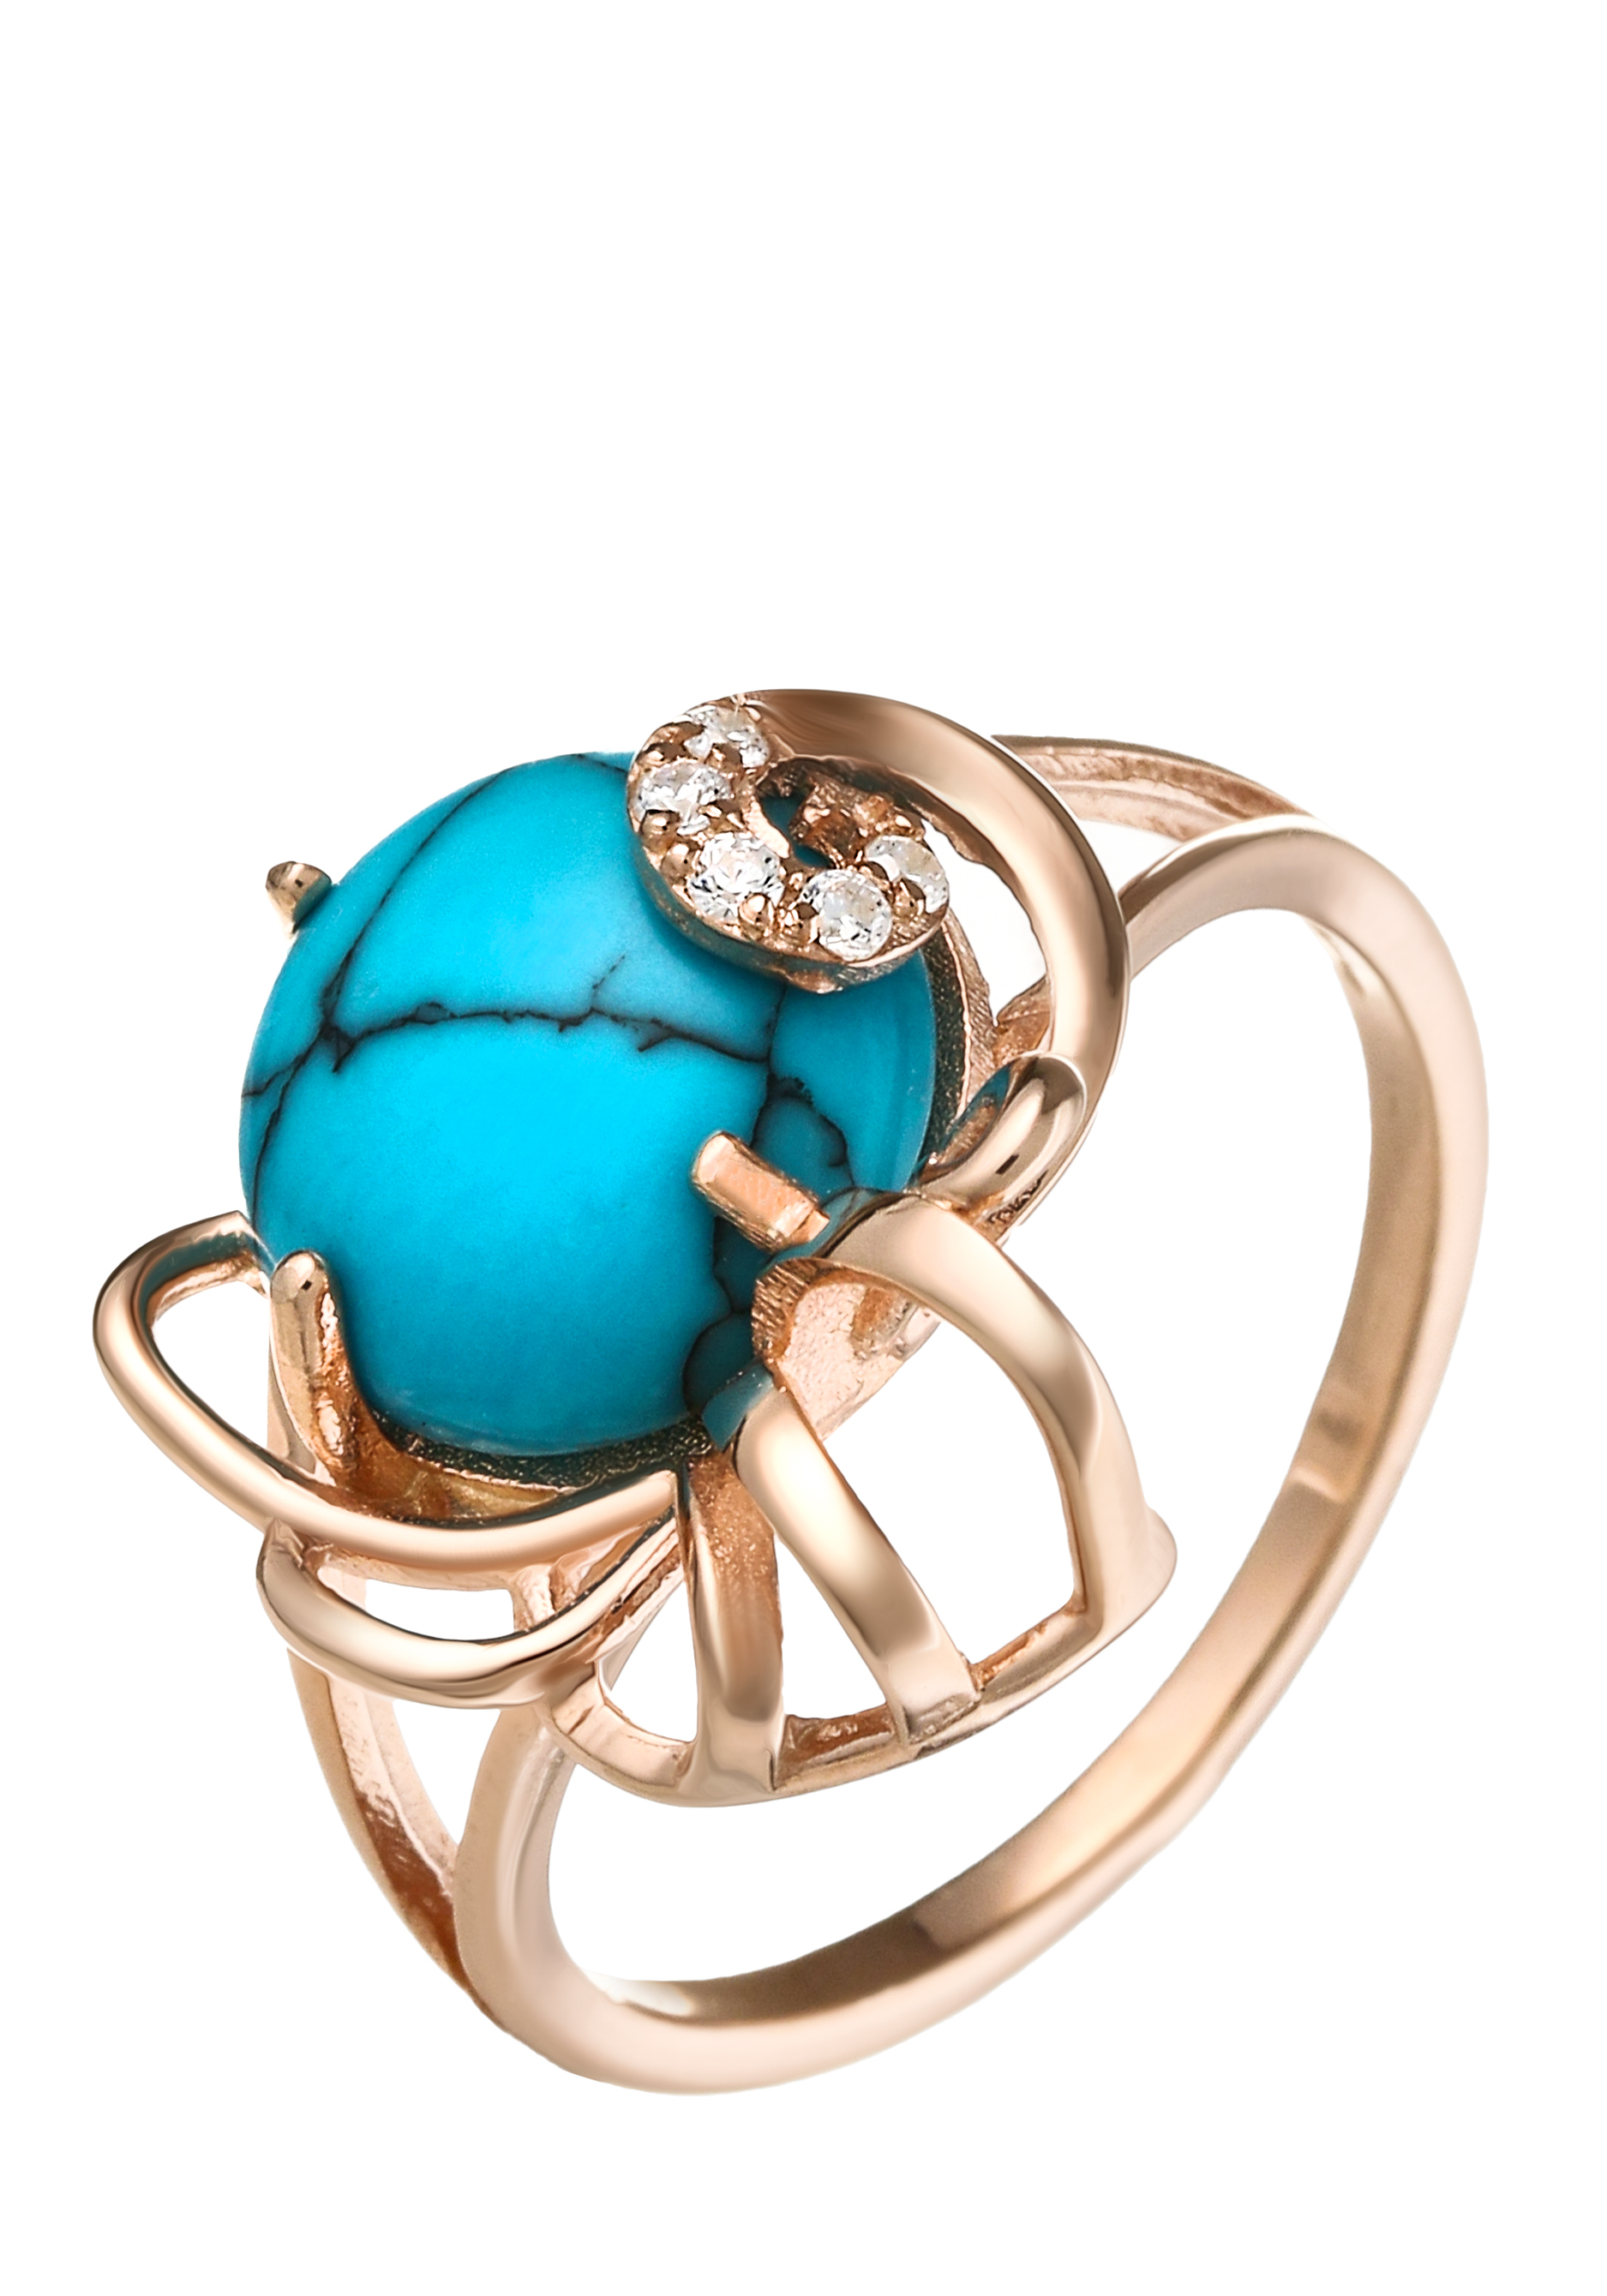 Кольцо серебряное "Эталон женственности" Бриллианит Серебряная линия, цвет голубой, размер 21